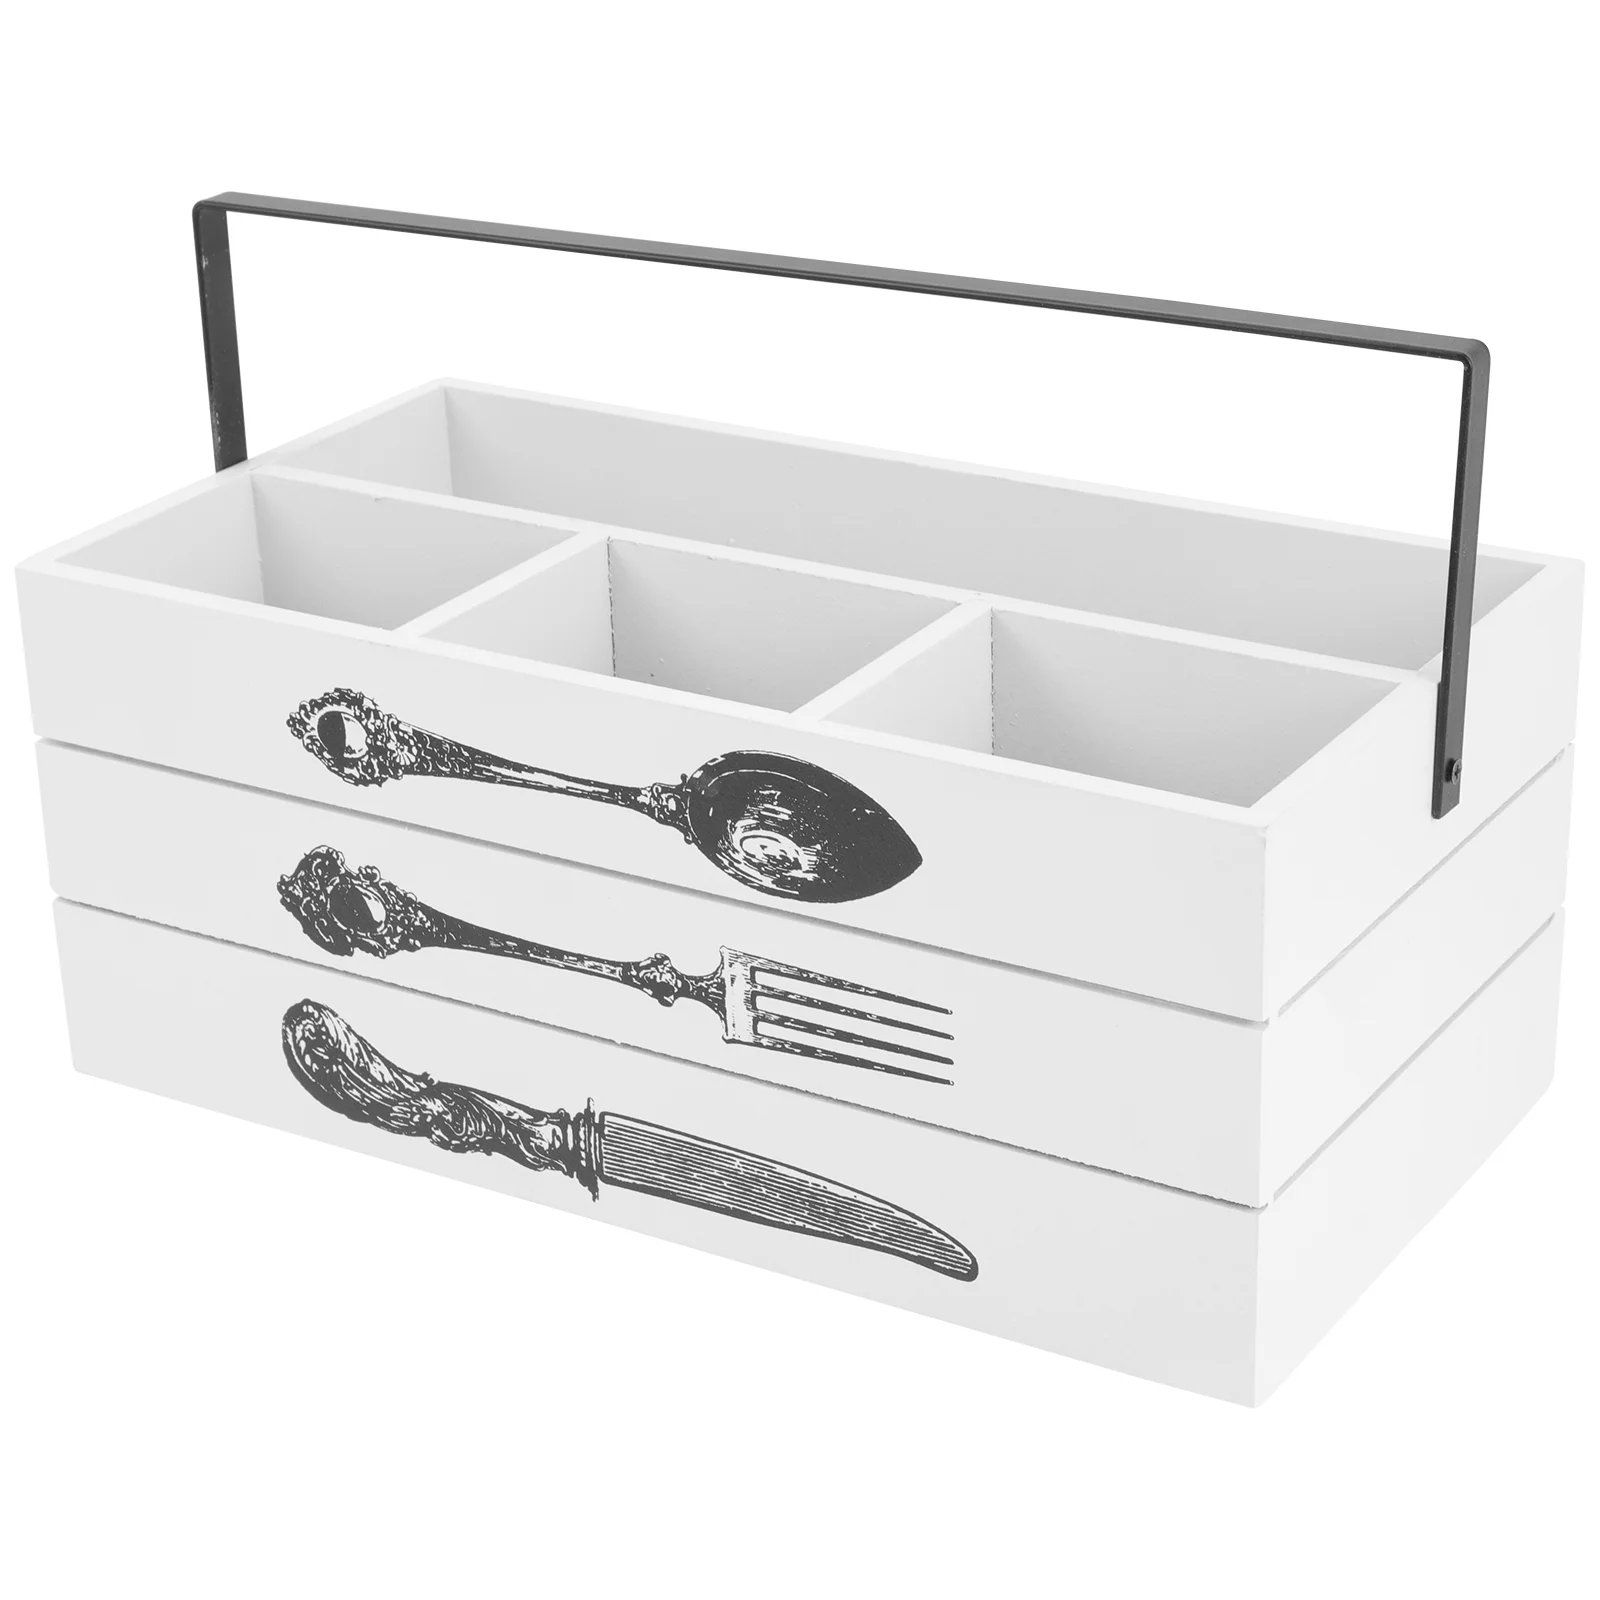 

Cutlery Utensil Silverware Organizer Caddy Holder Flatware Kitchen Storage Box Wooden Tray Bin Basket Drawer Fork Spoon